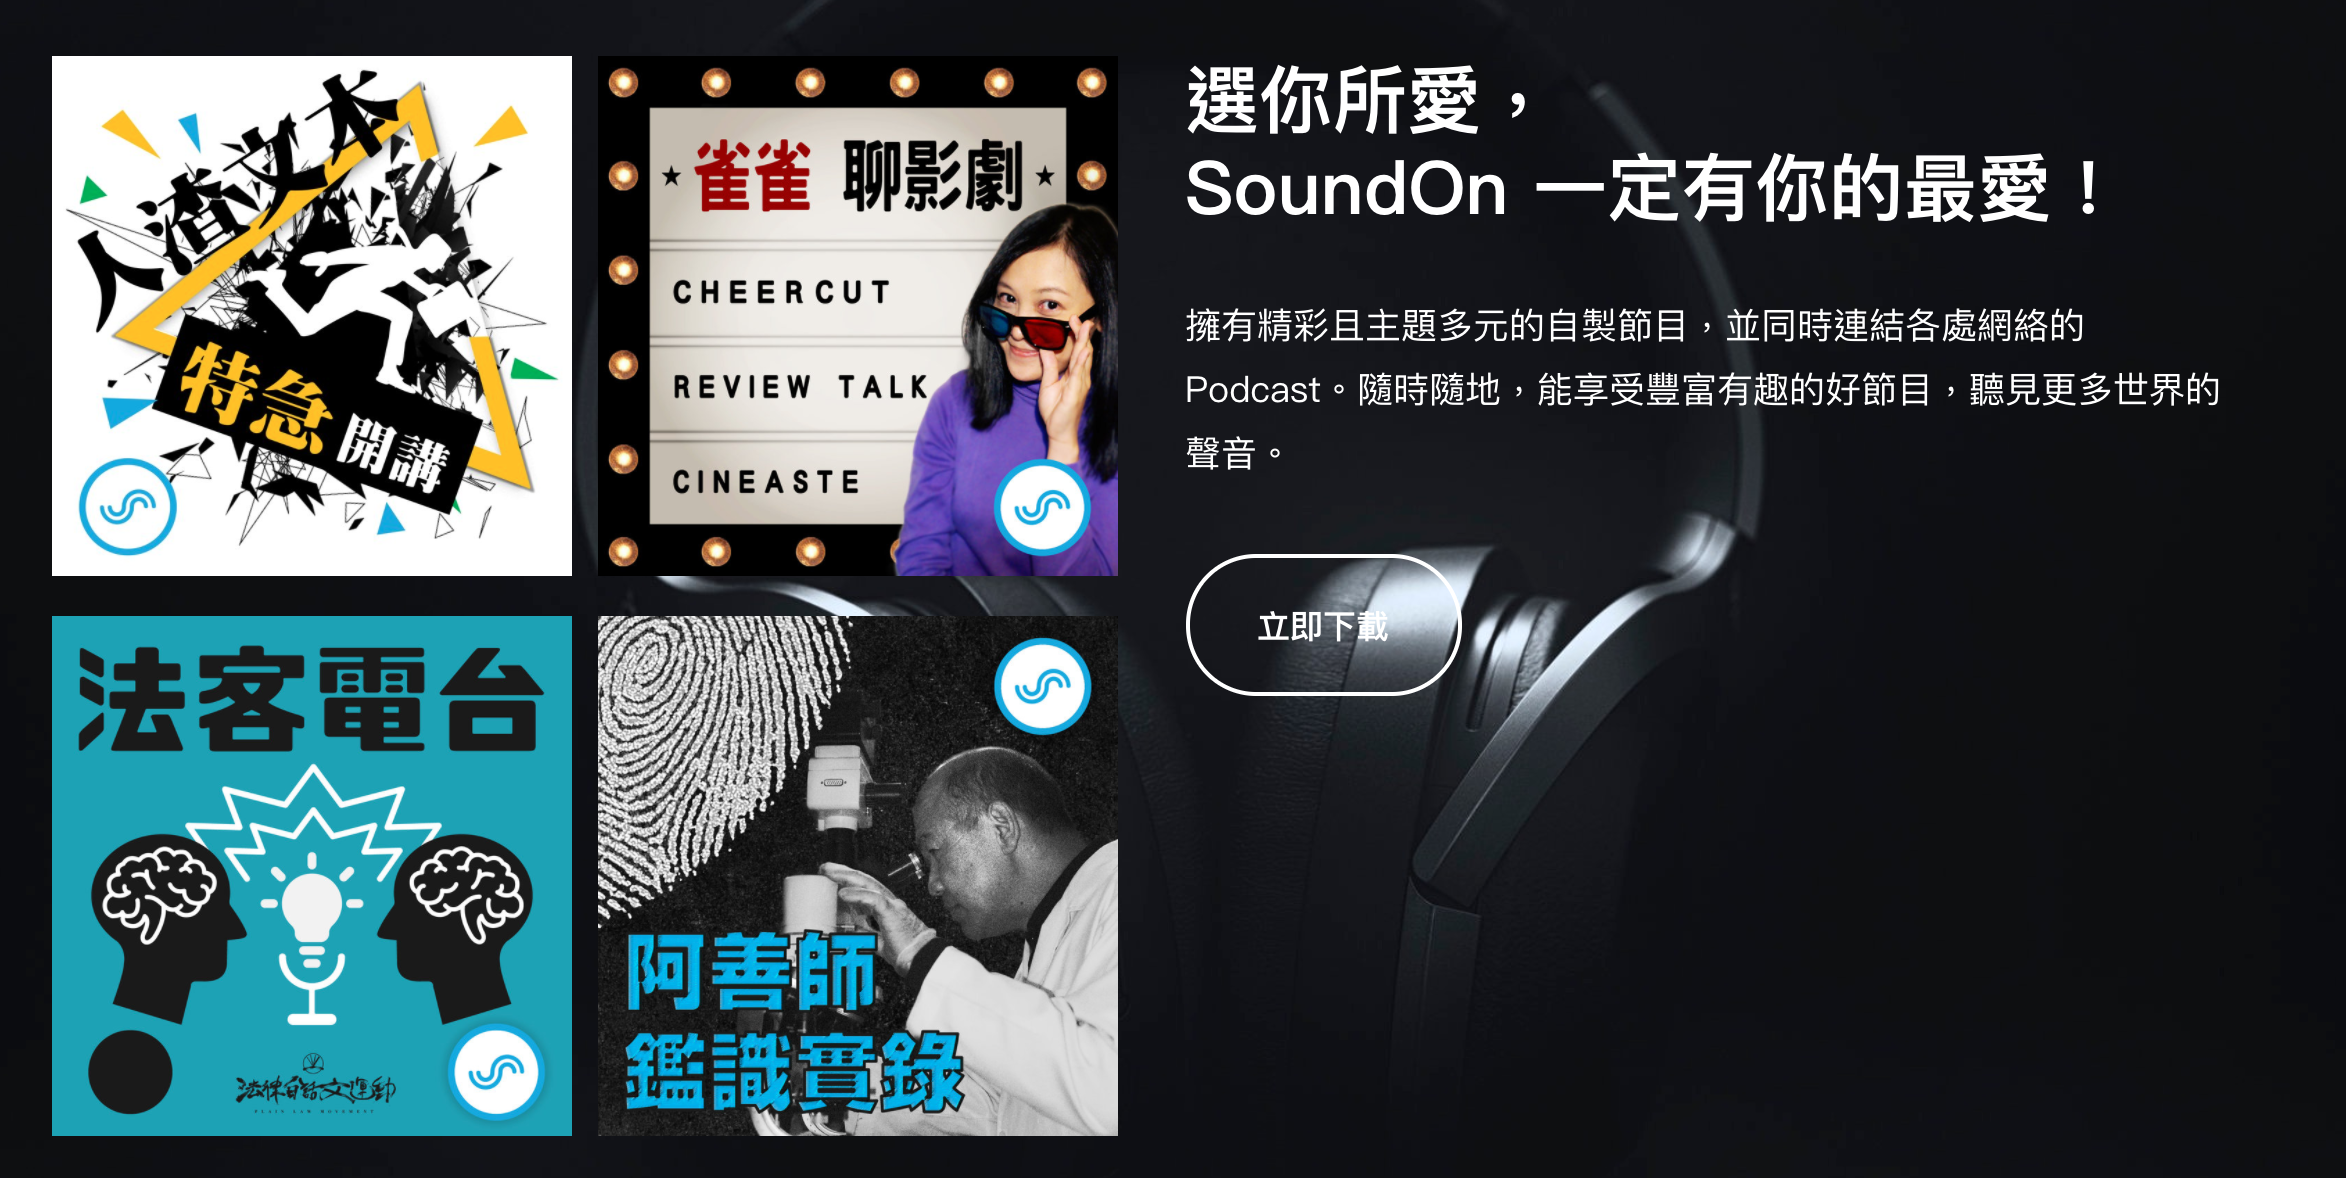 選你所愛， SoundOn 一定有你的最愛！